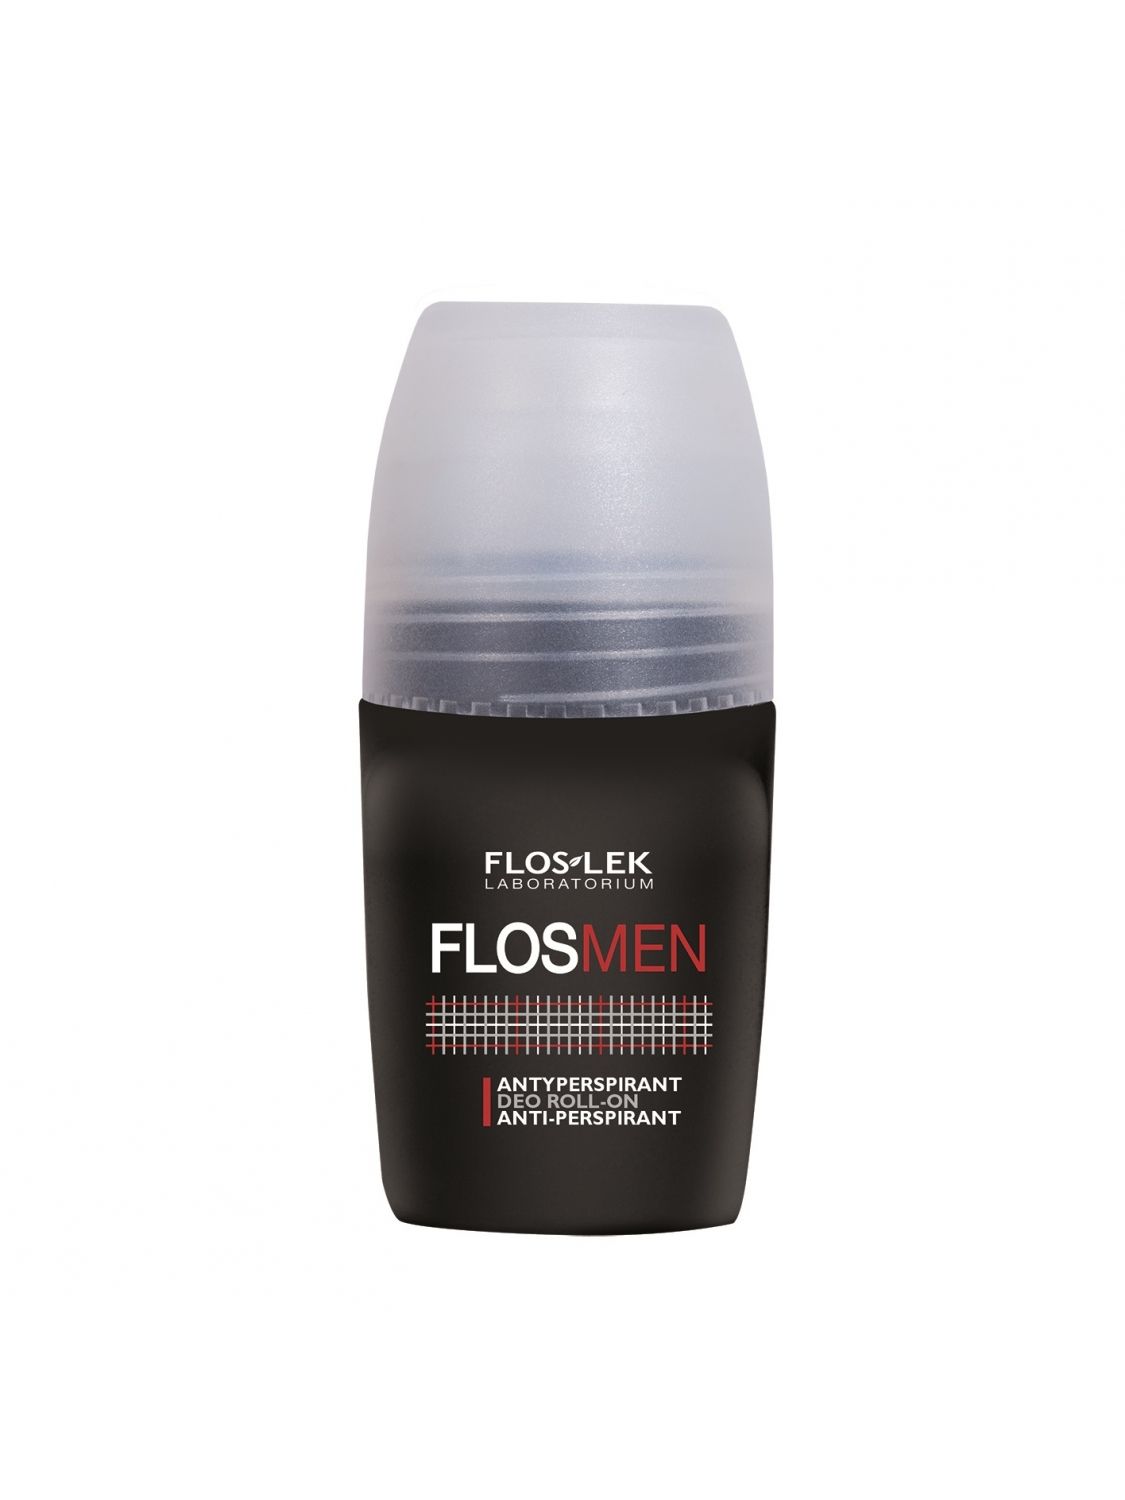 Floslek FLOS MEN antiperspirant deo roll on